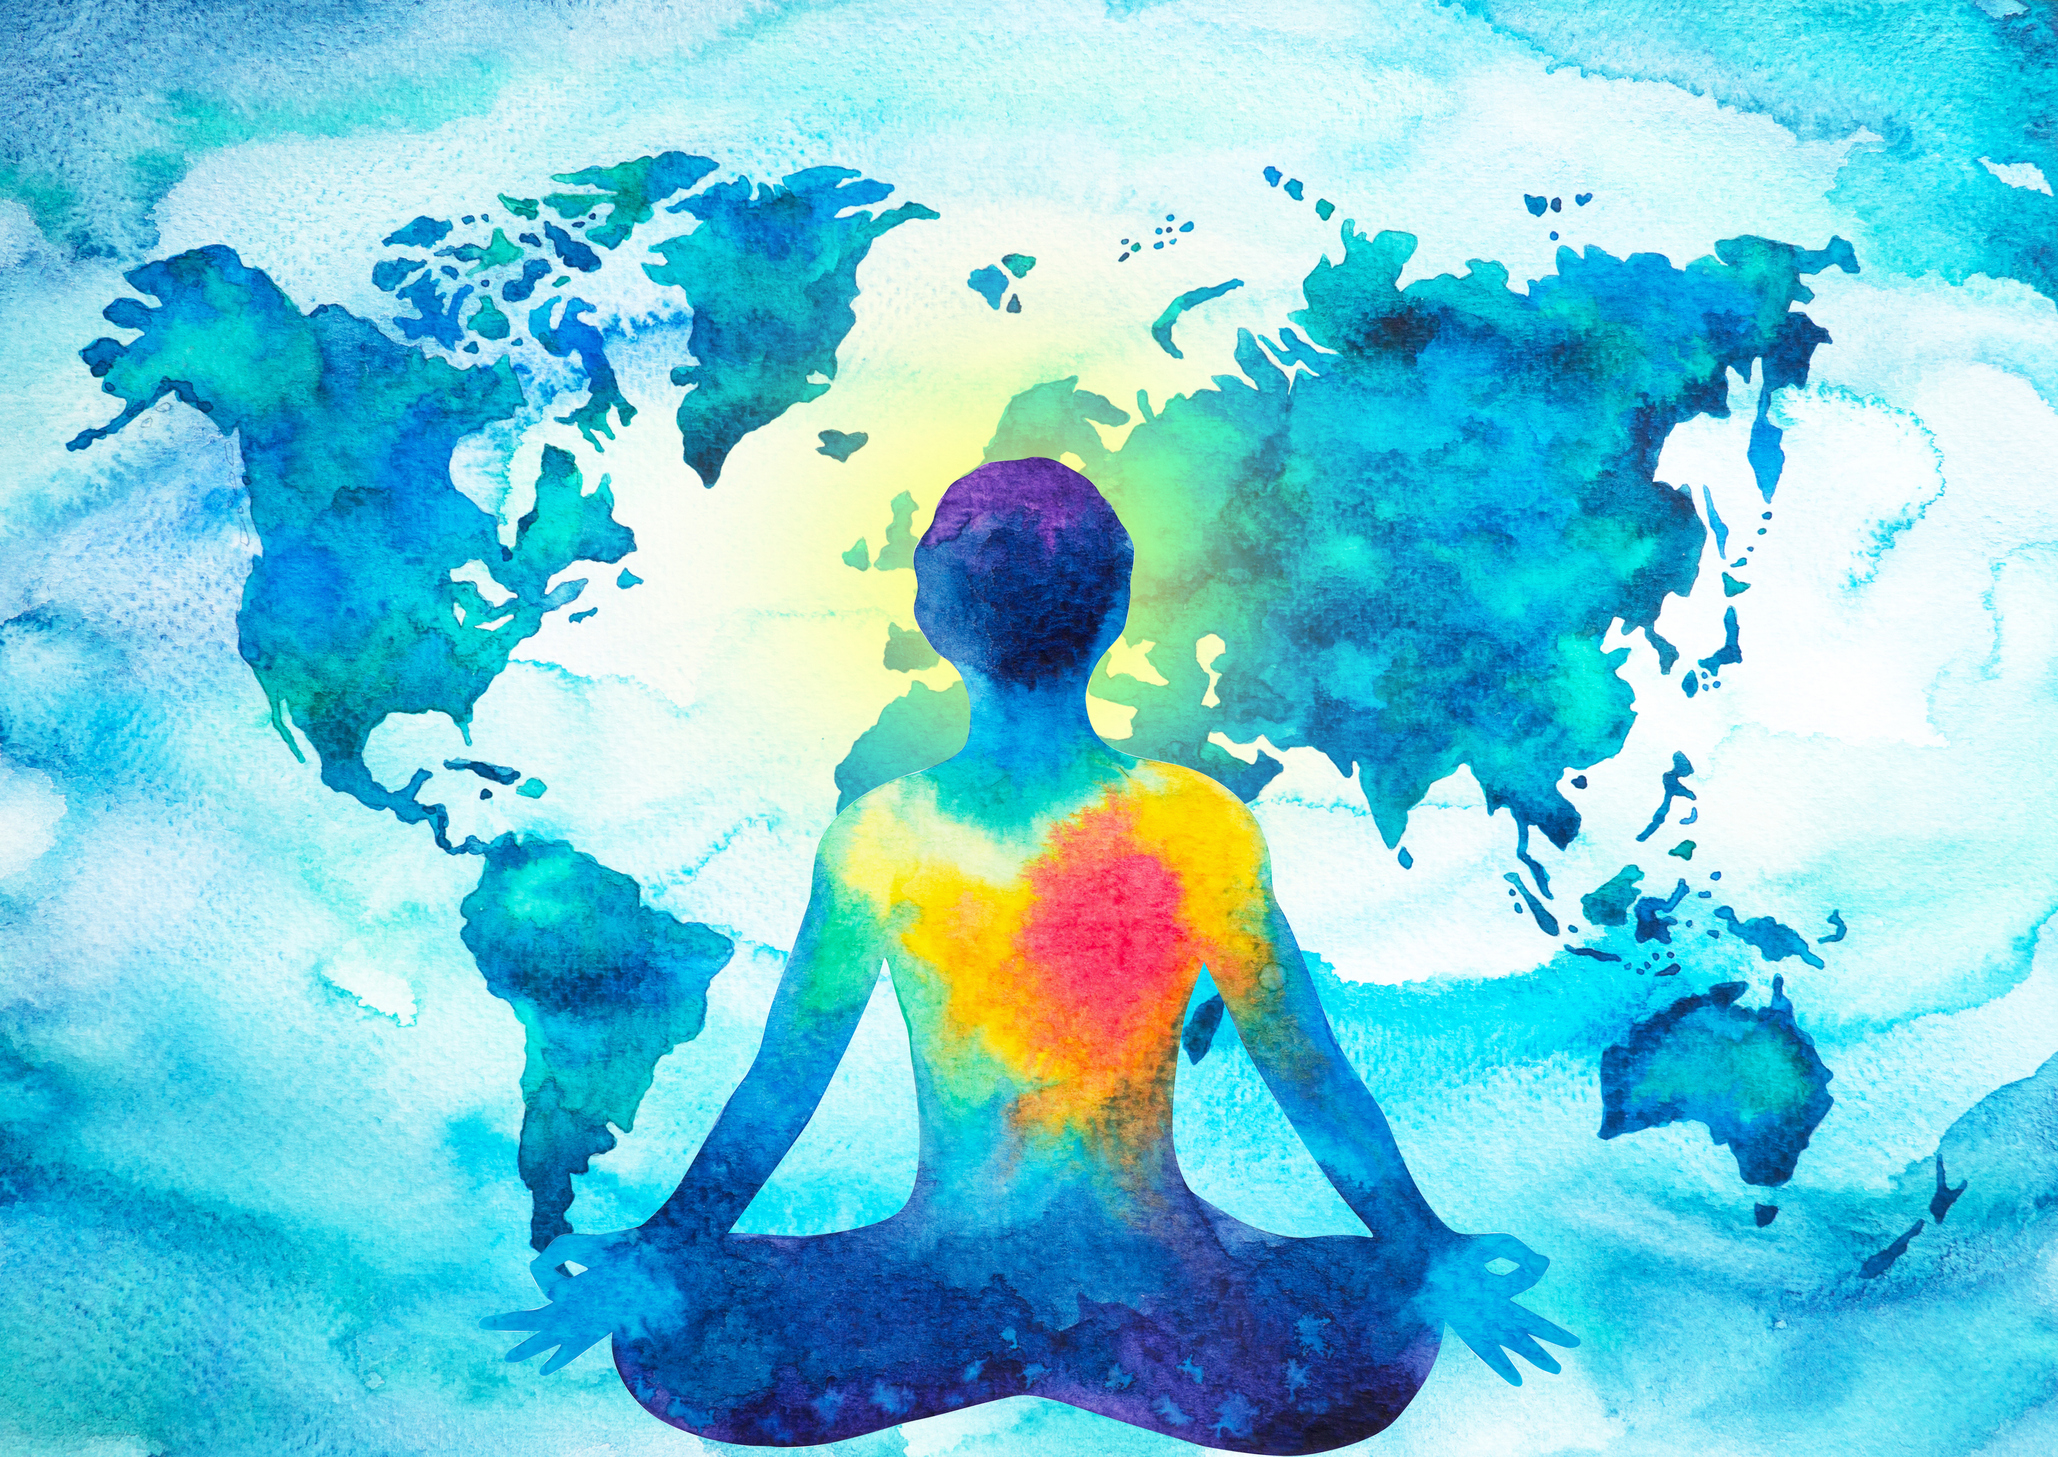 Être humain méditant à cœur ouvert devant la carte du monde